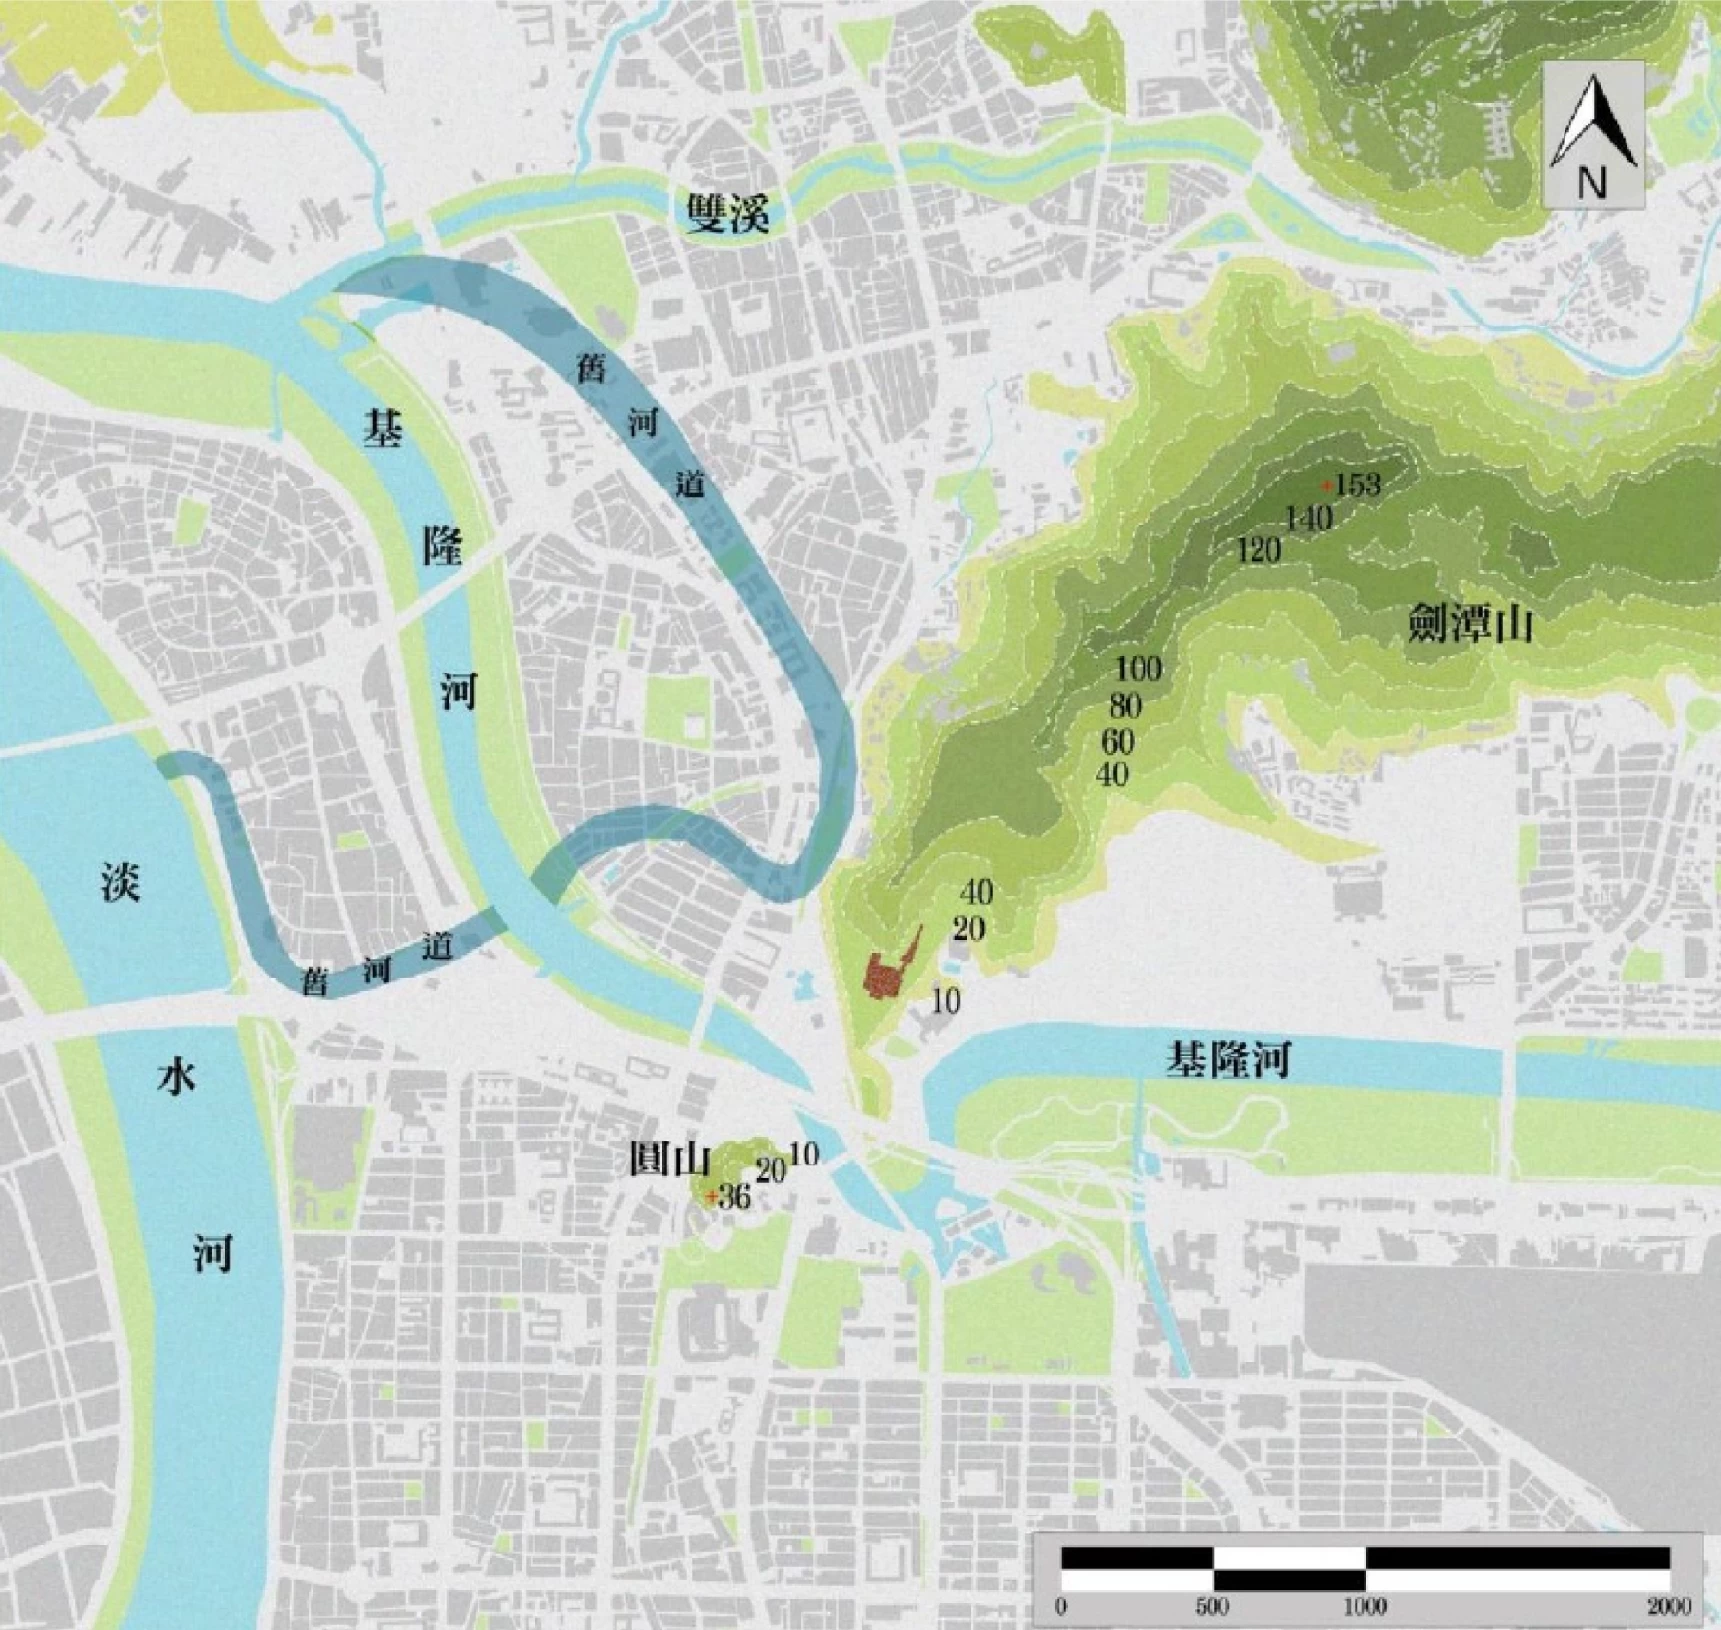 圓山地區地貌及街區紋理現況與曾經的基隆河段；資料來源：林思妤、林玠君繪製，2015-圖片